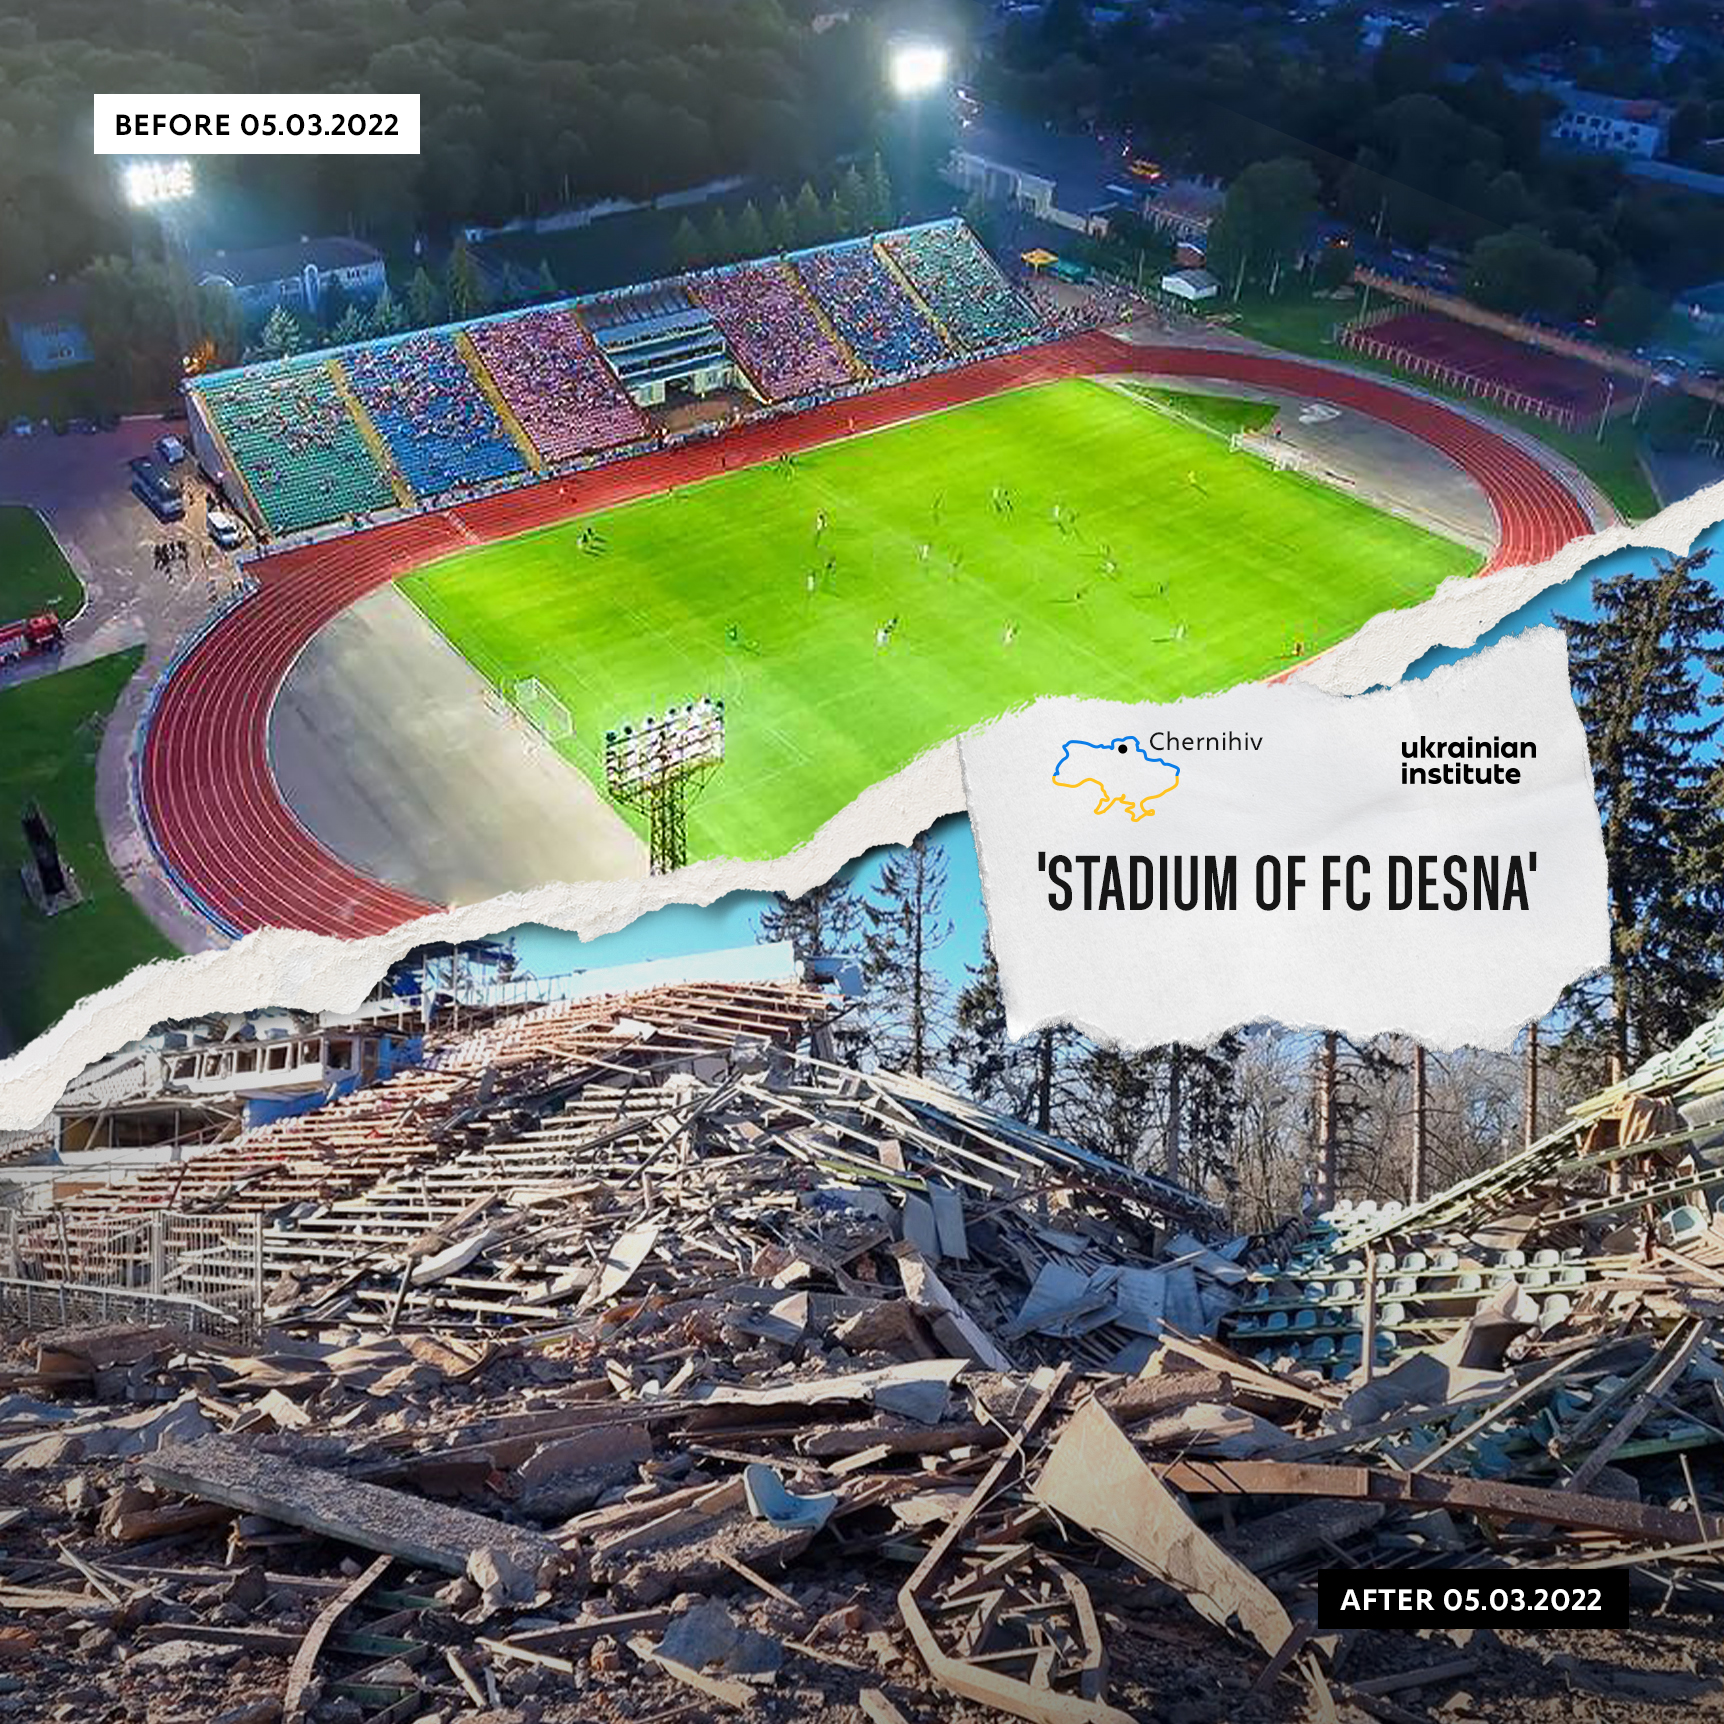 Stadium of FC Desna